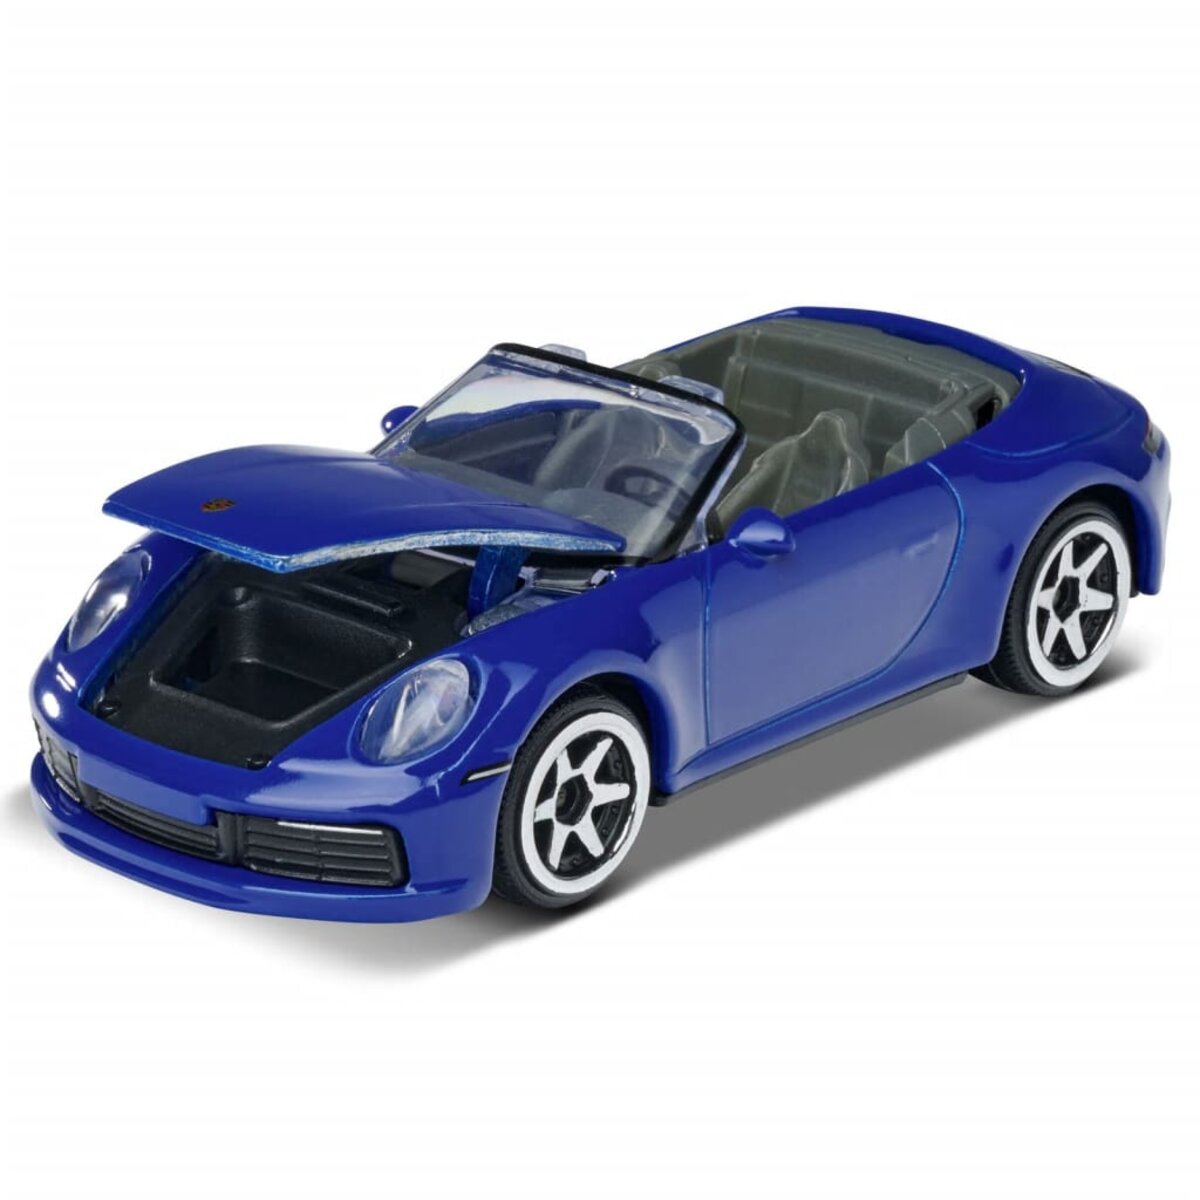 Majorette - Porsche edition - Le coin du jouet